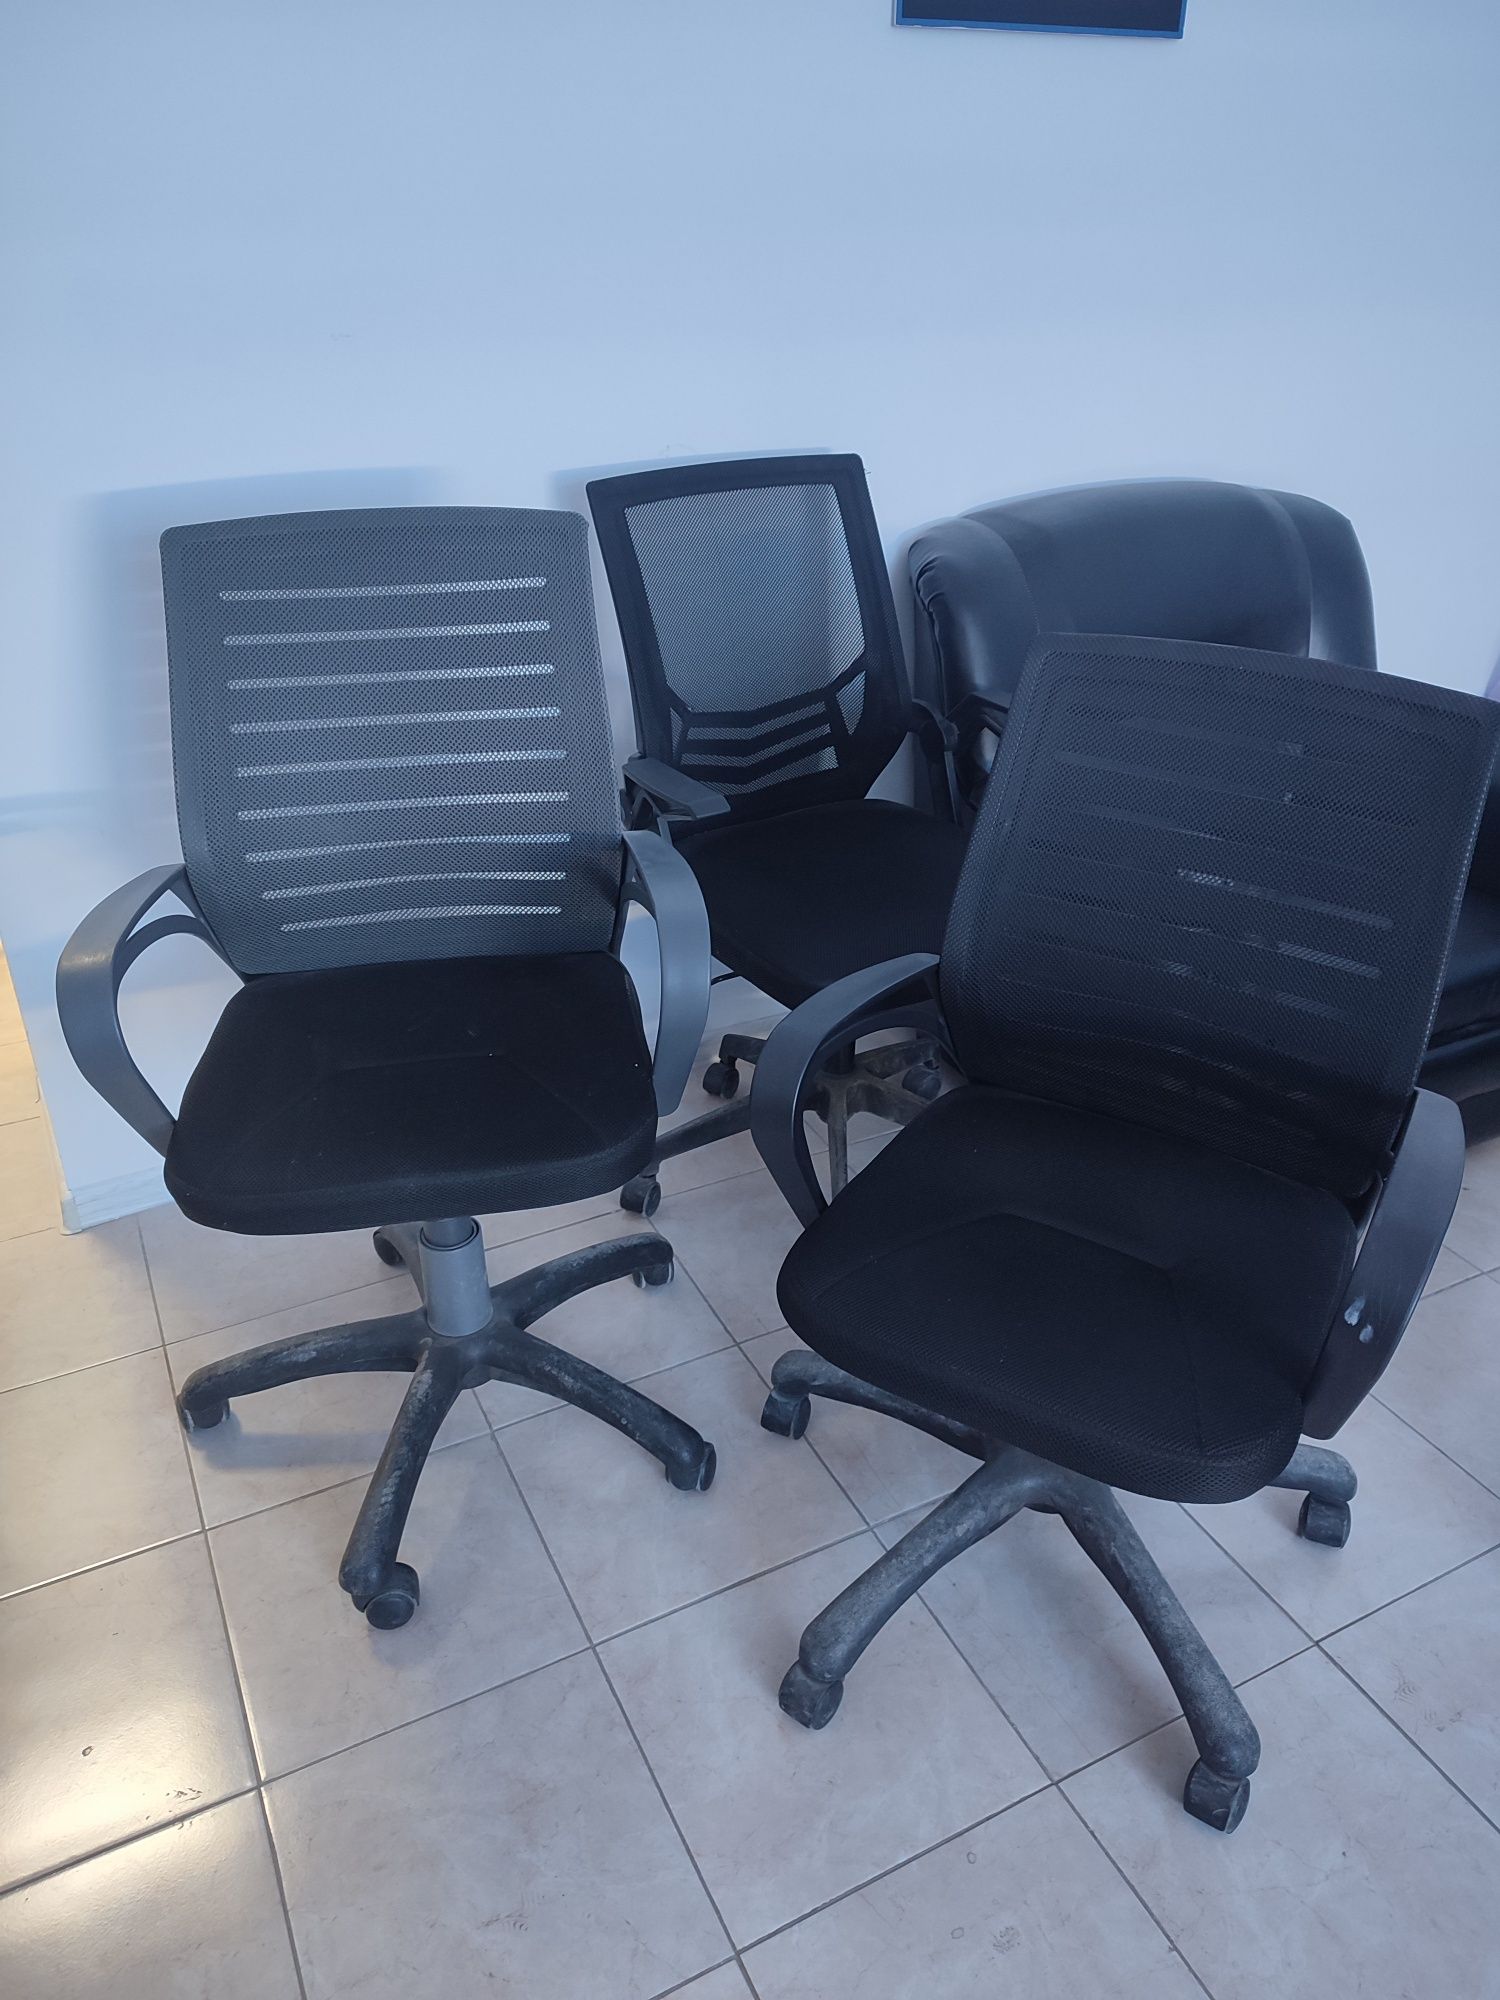 Продаются офисные стулья